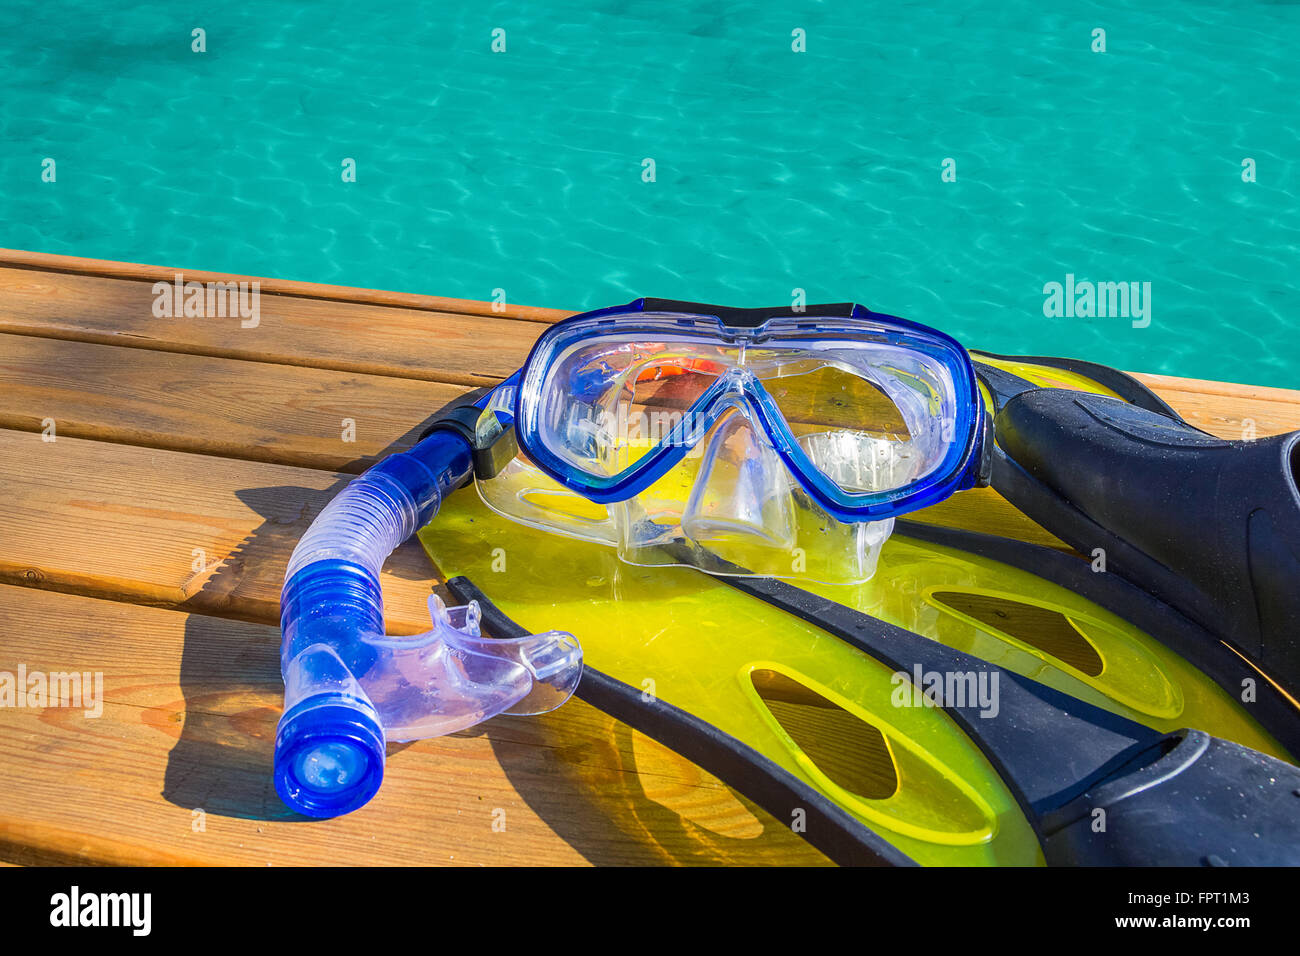 Snorkeling gear on a wood pier Stock Photo